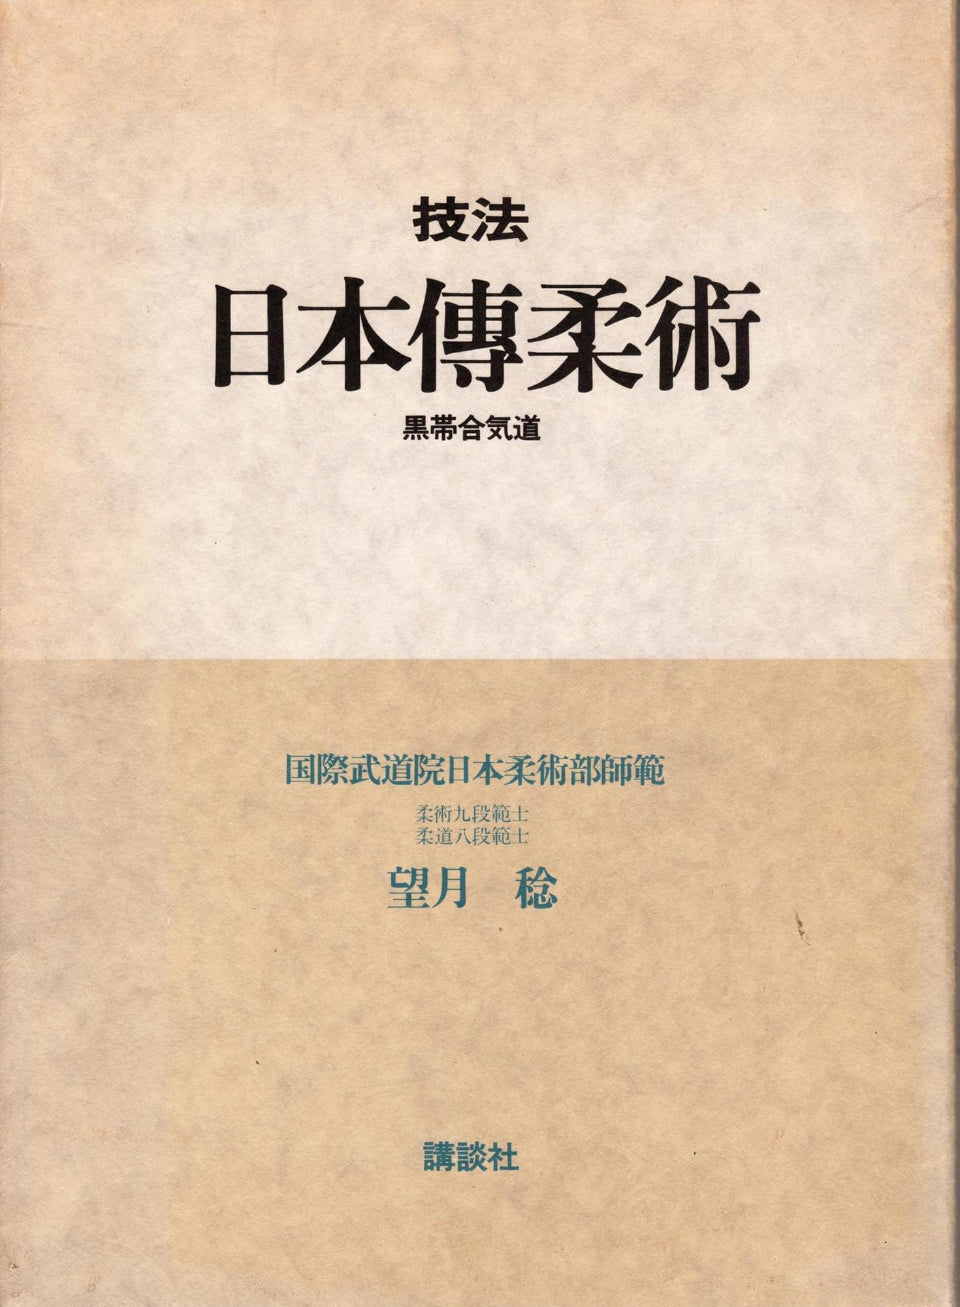 Nihon Den Jujutsu Book by Minoru Mochizuki (Hardcover) (Preowned)